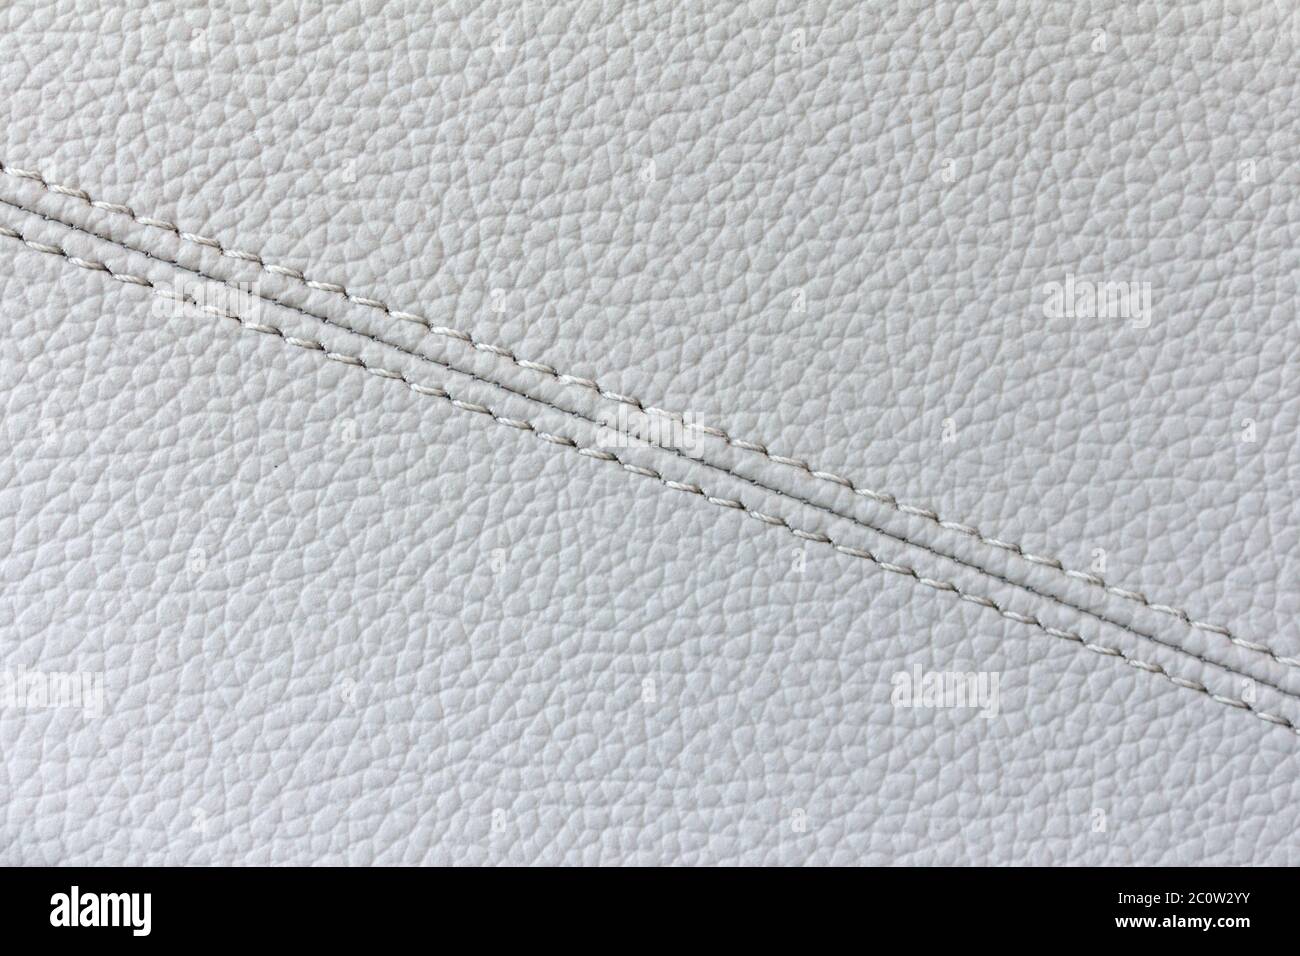 White gray luxury leather texture with diagonally seams Stock Photo